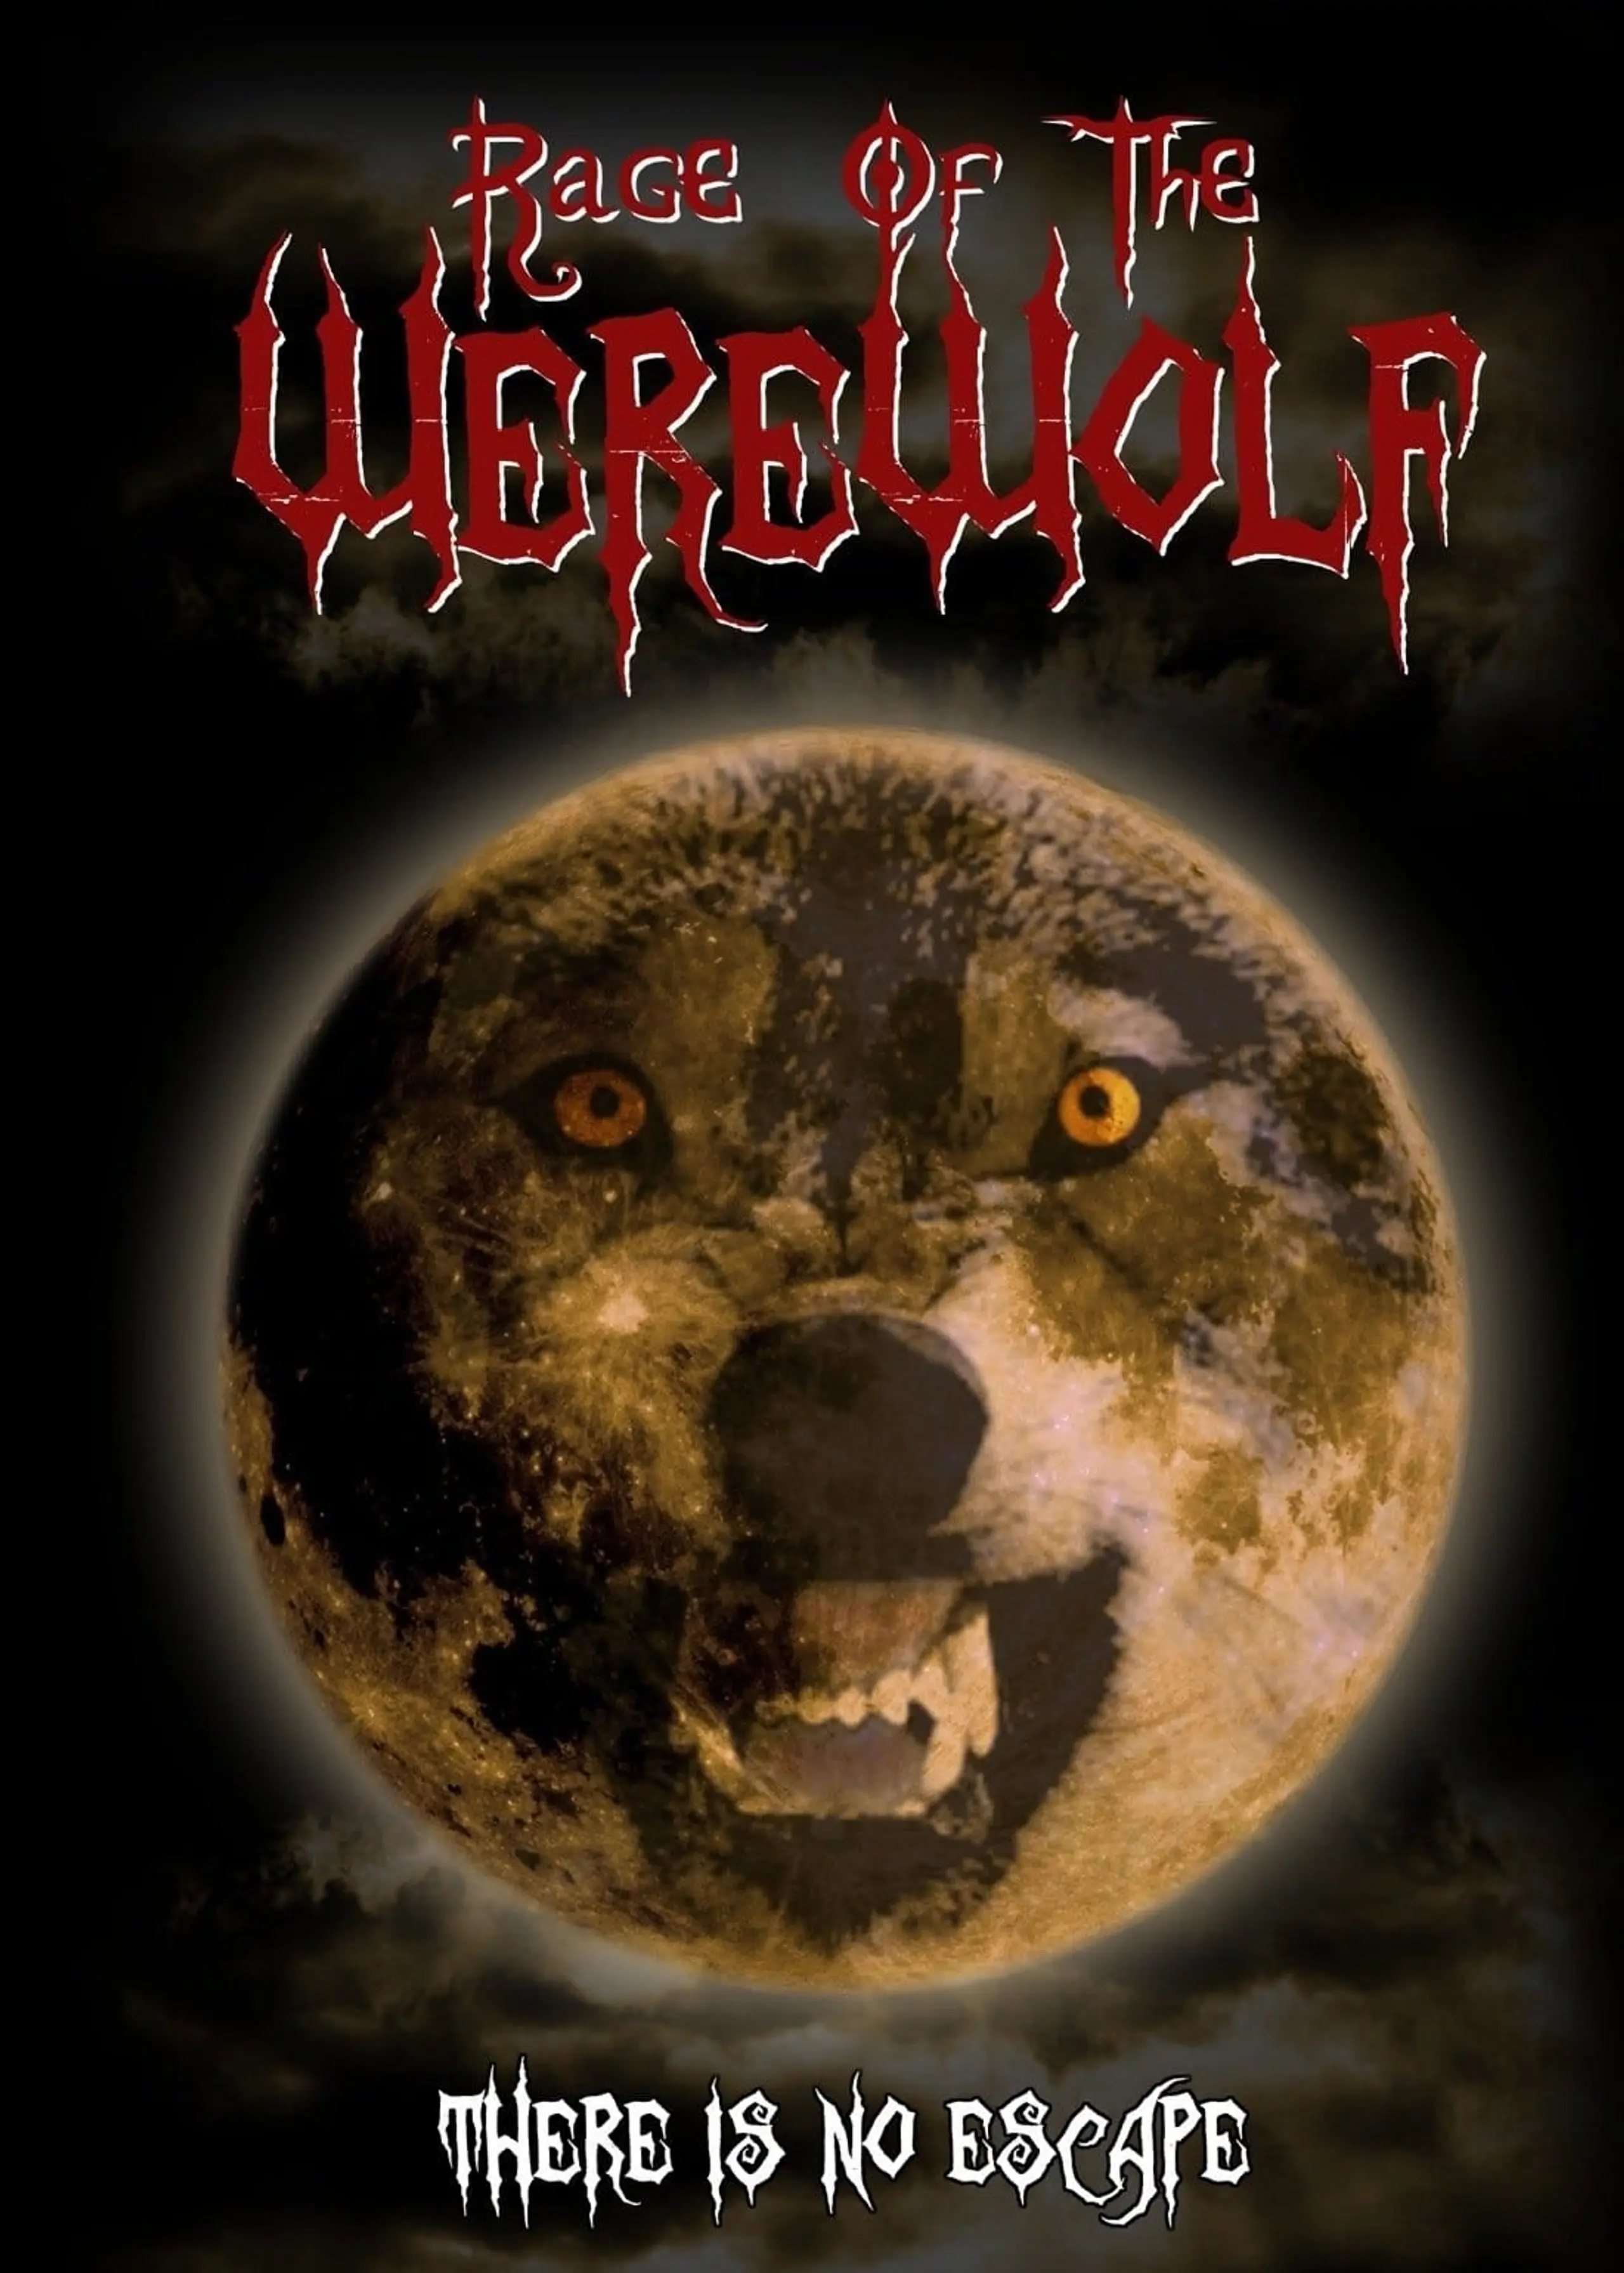 Rage of the Werewolf